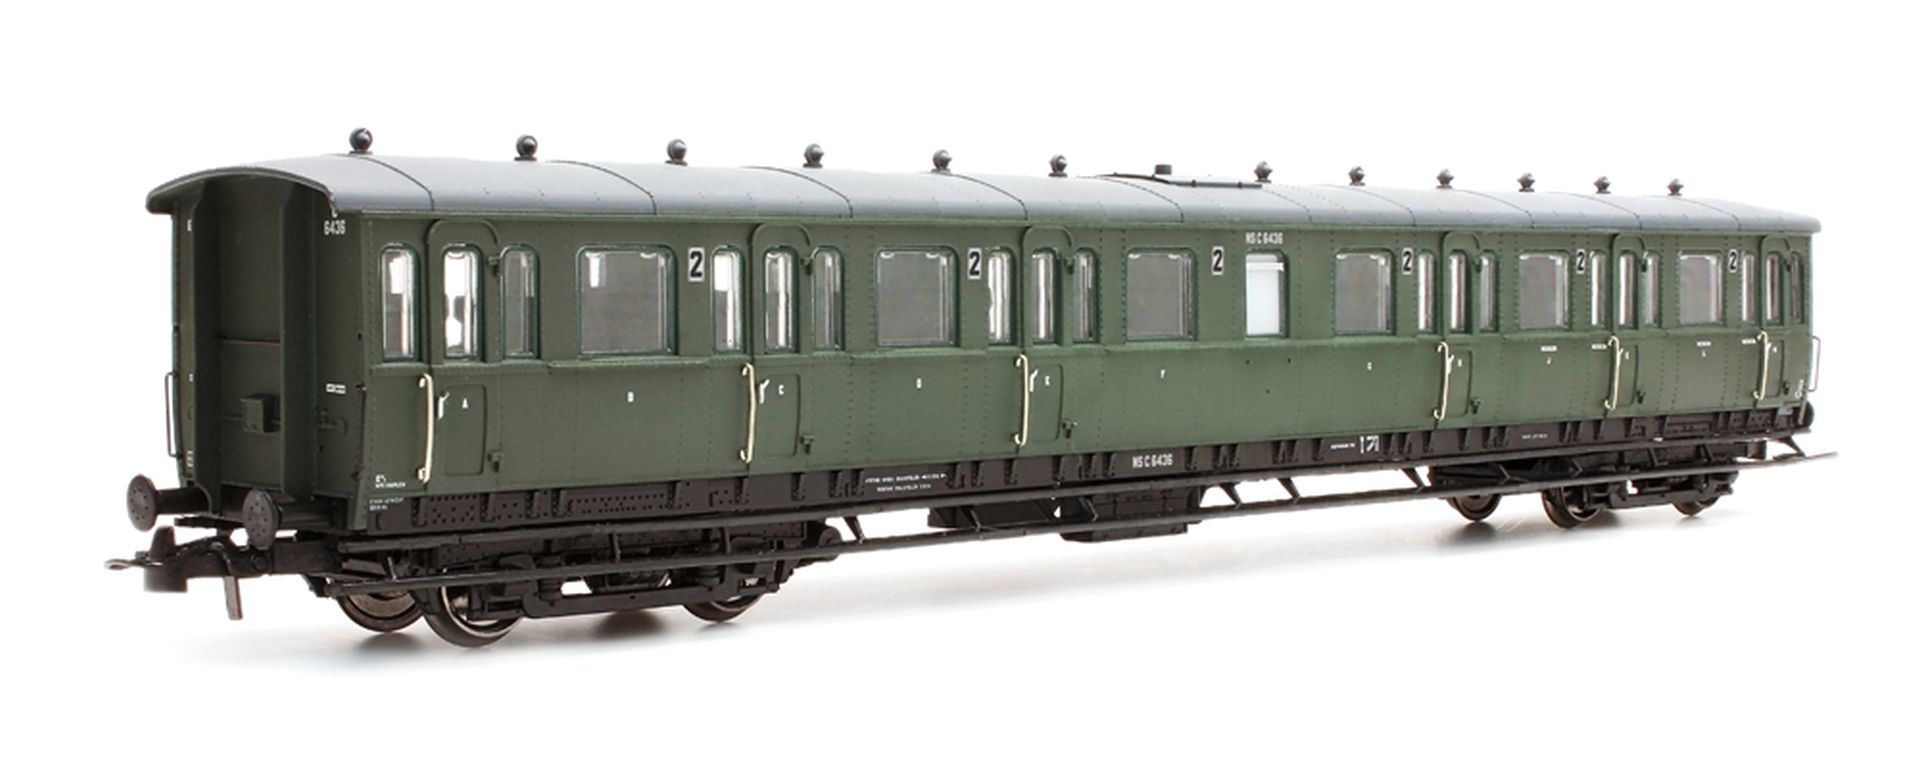 Artitec 20.254.08 - Personenwagen C12c C6449, 3. Klasse, NS, Ep.III